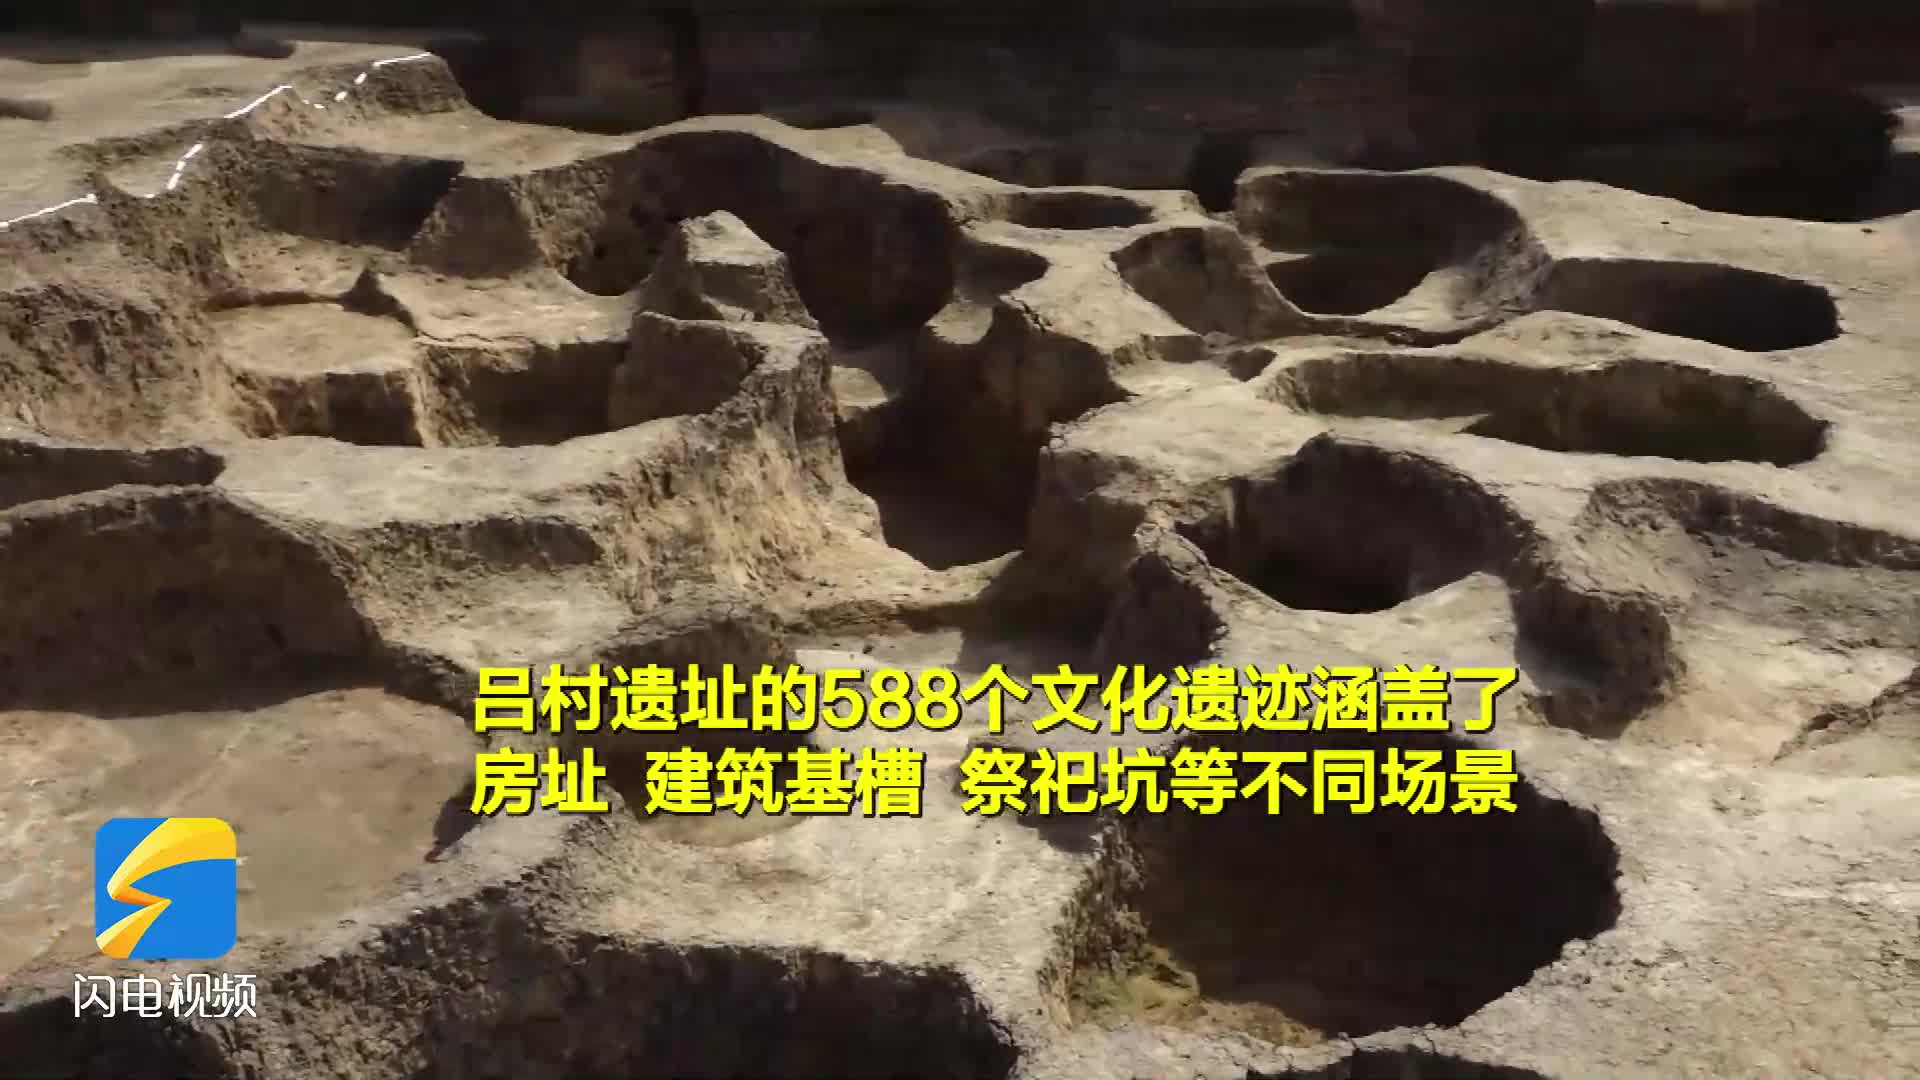 吕村遗址发现10米宽3.5米深环壕，为胶东半岛发现的同时期规模最大遗址